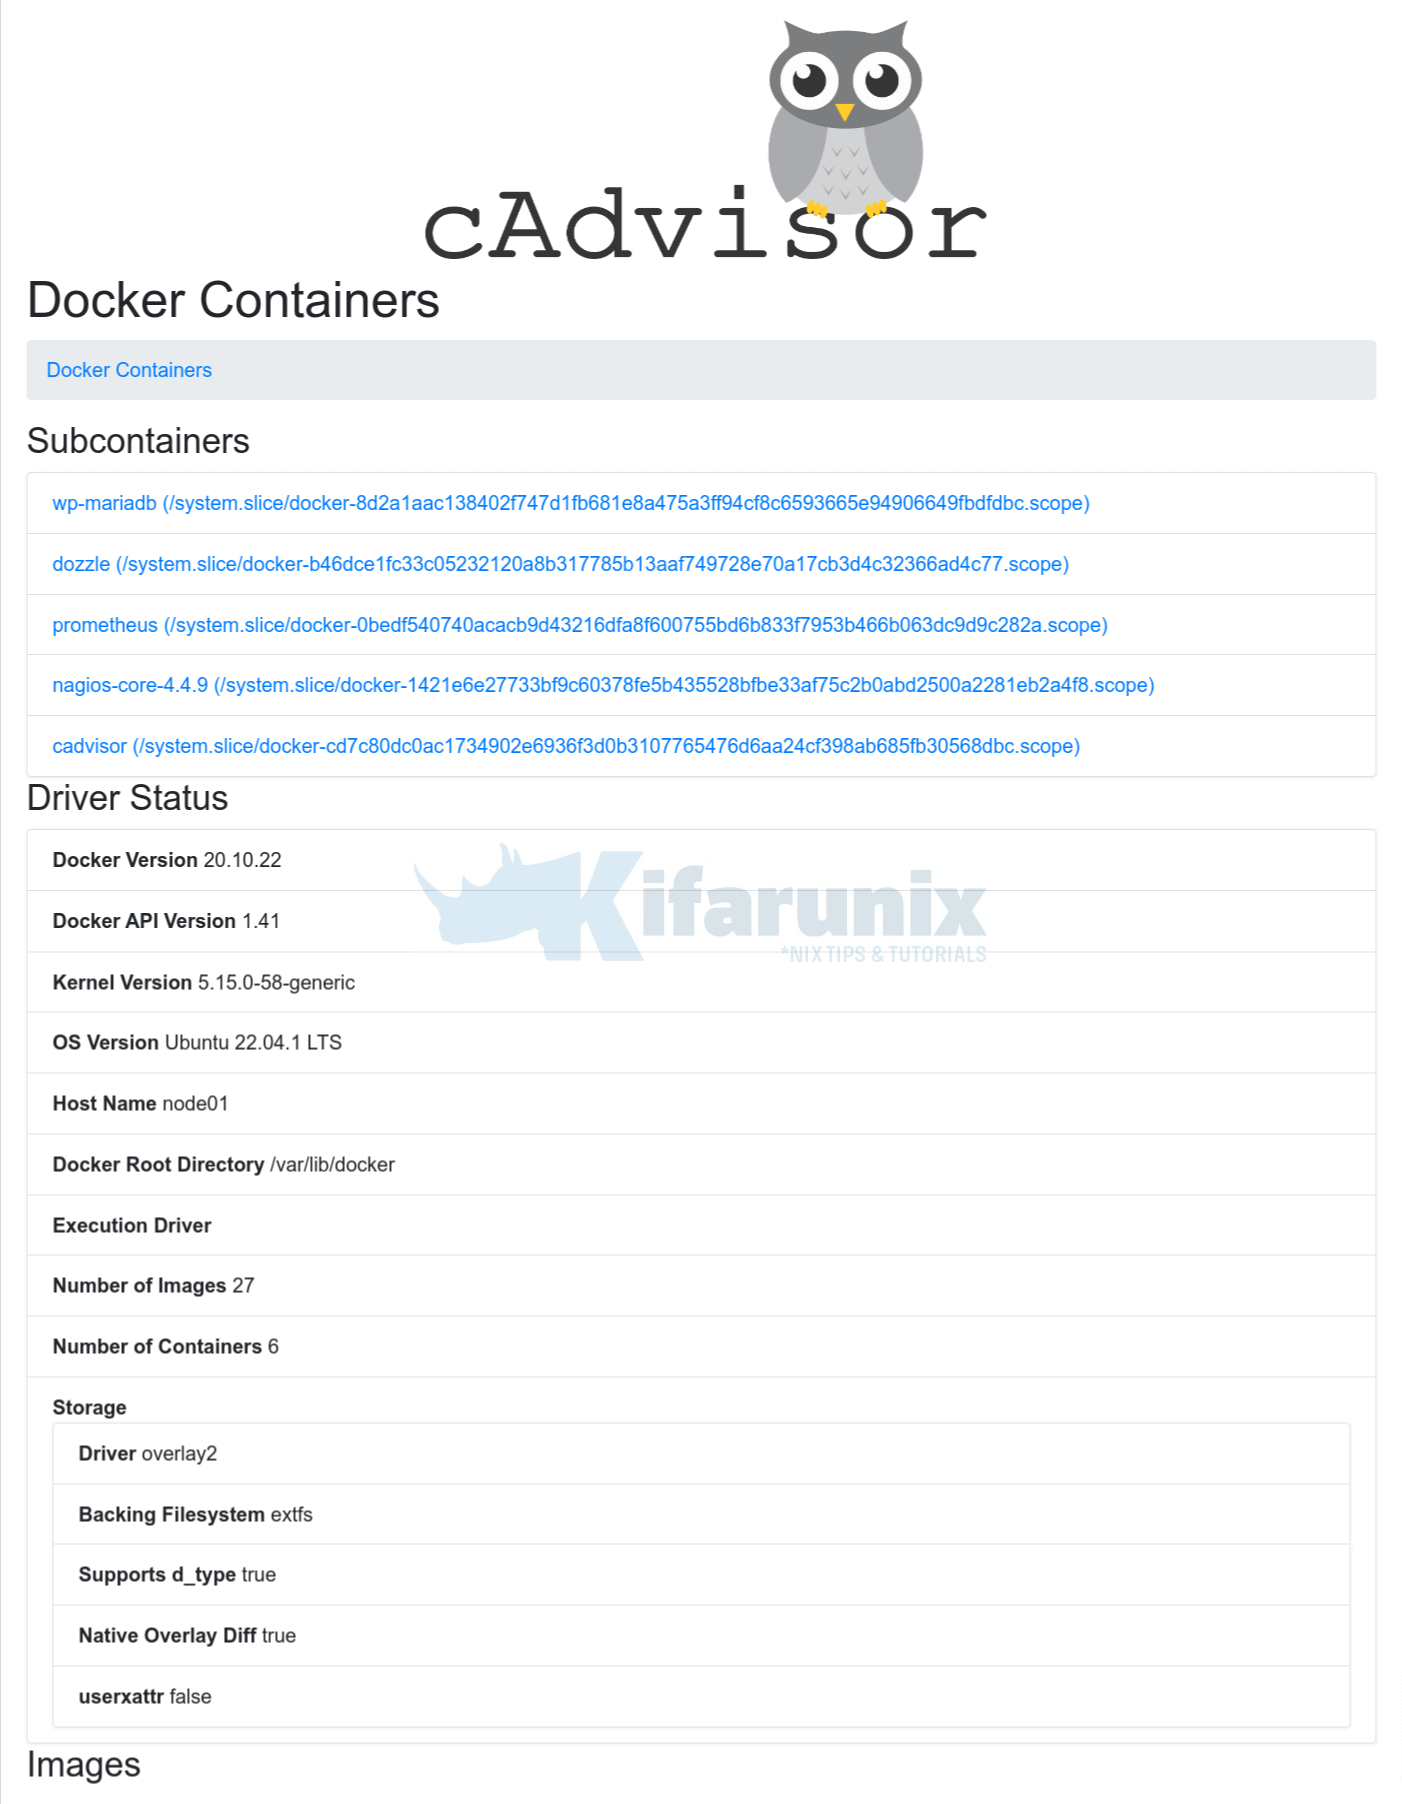 Monitor Docker Containers Metrics using Grafana